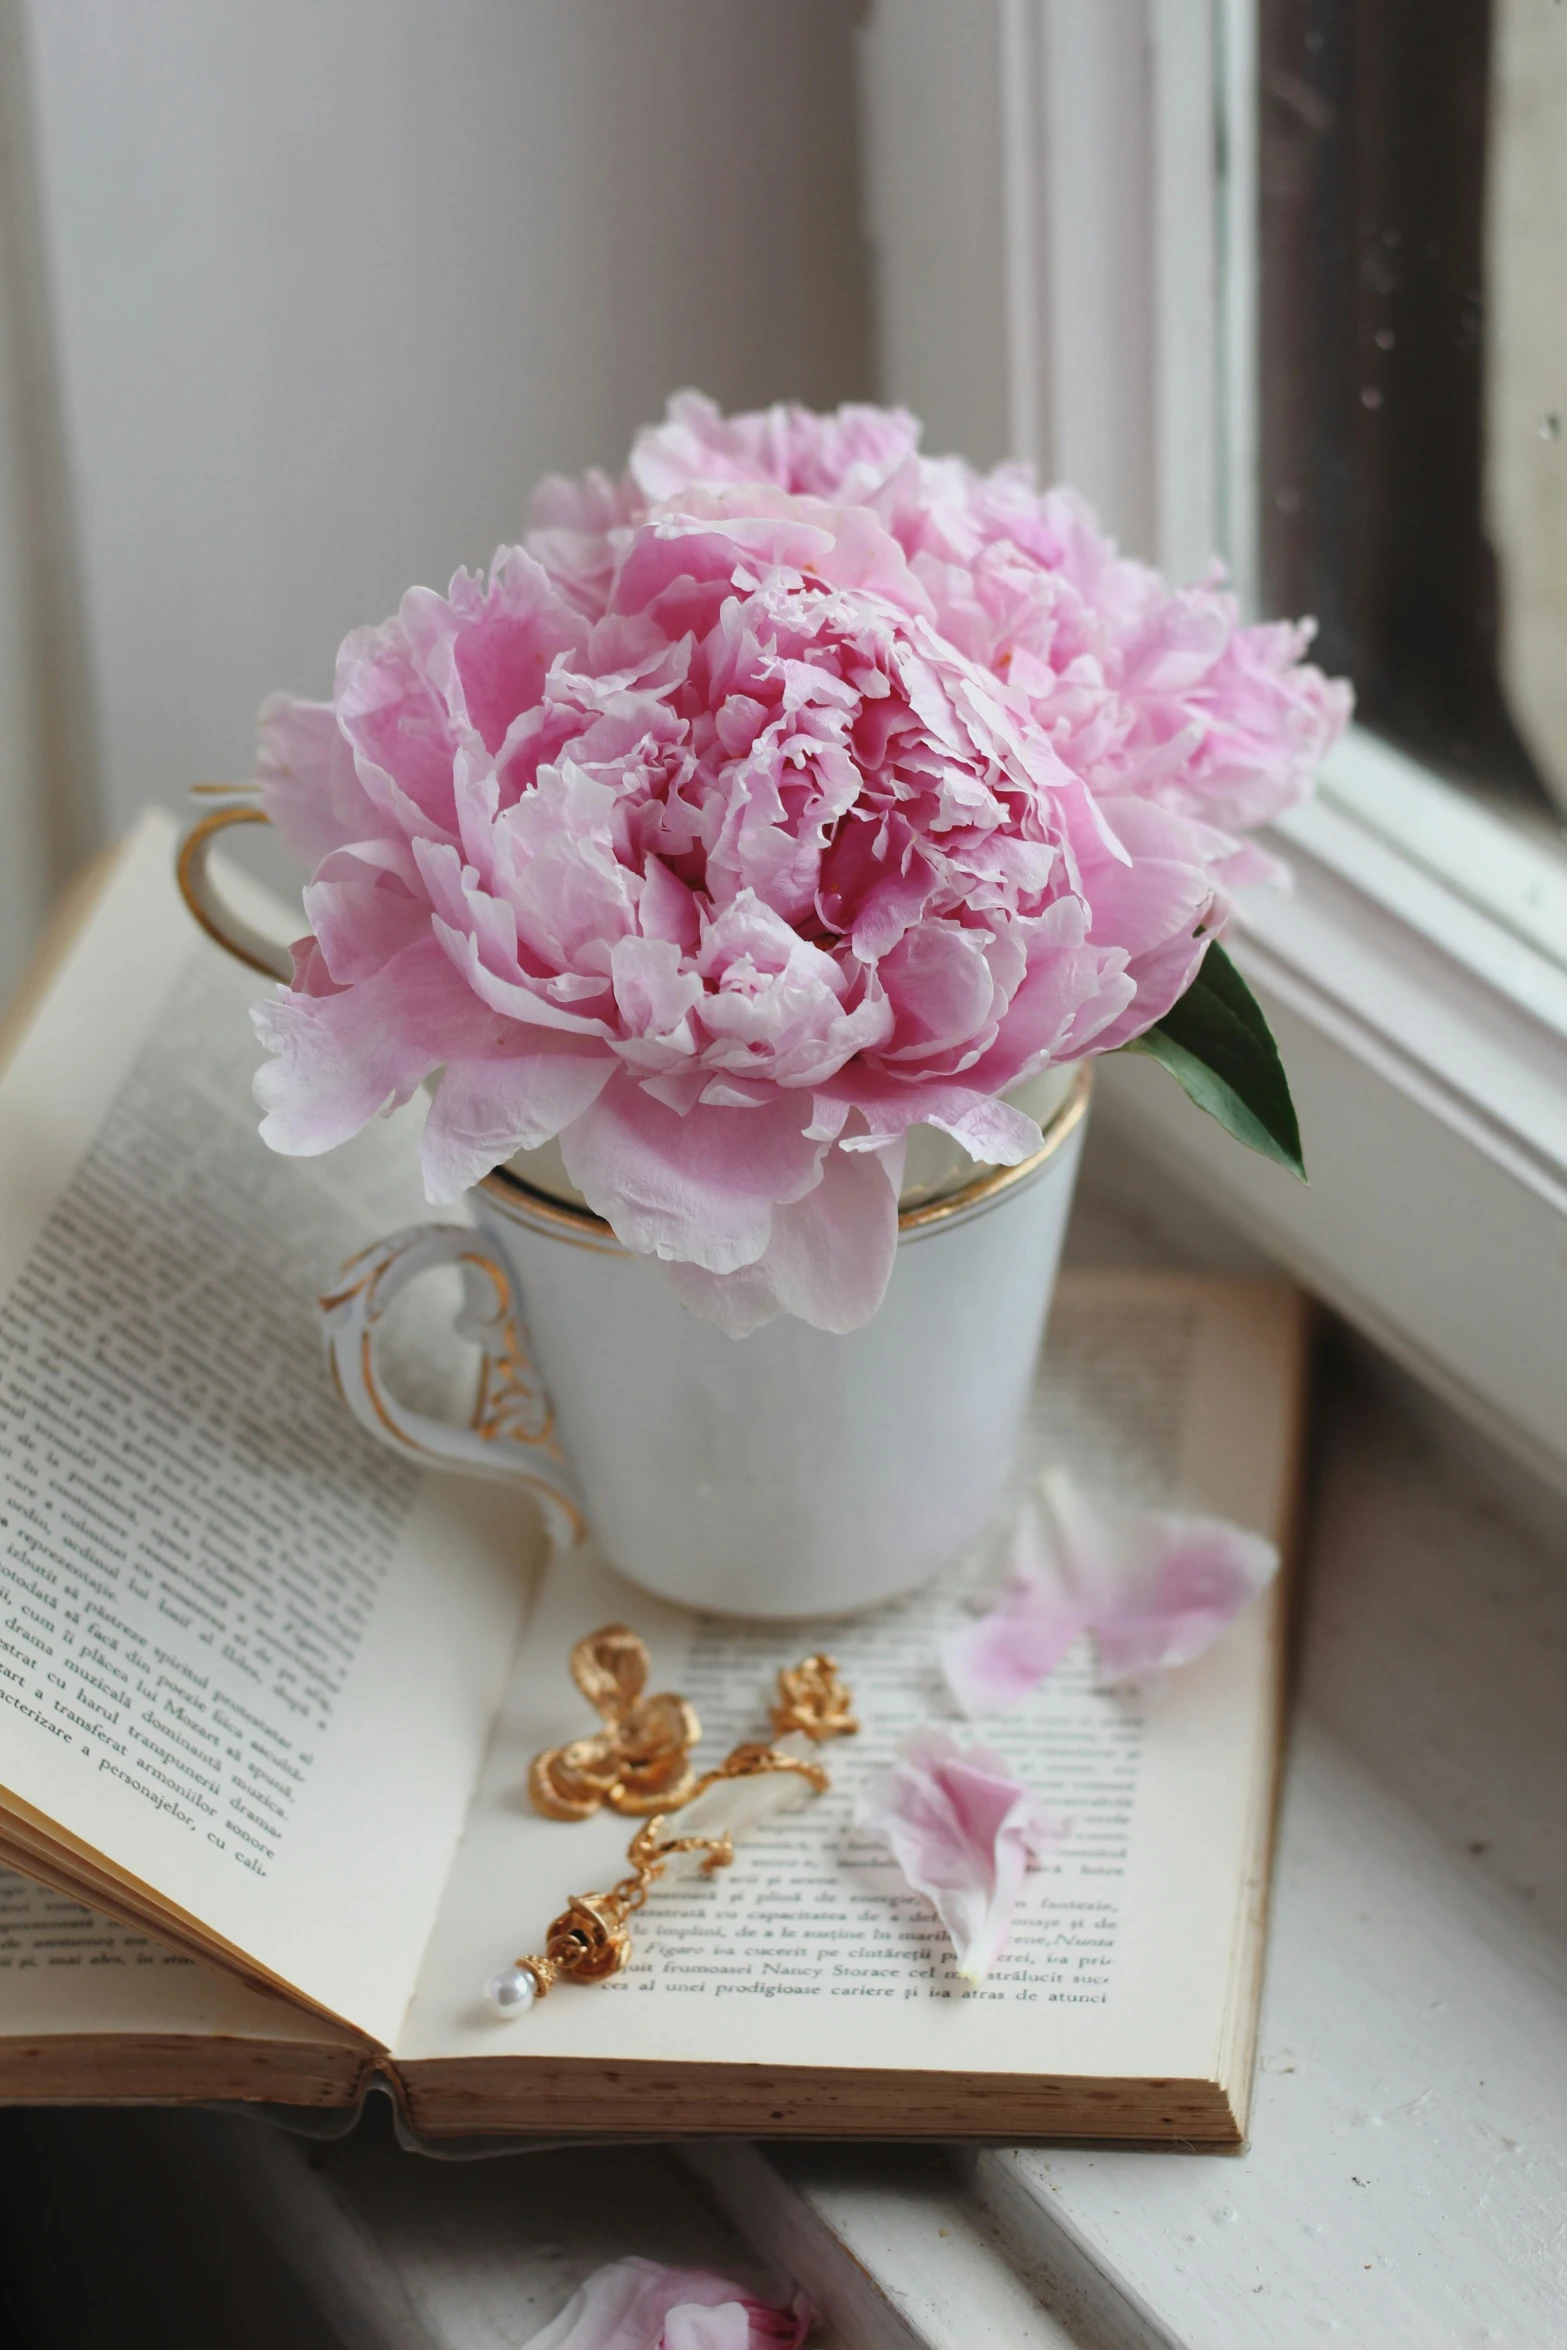 pink flowers sit on a book beside an open window